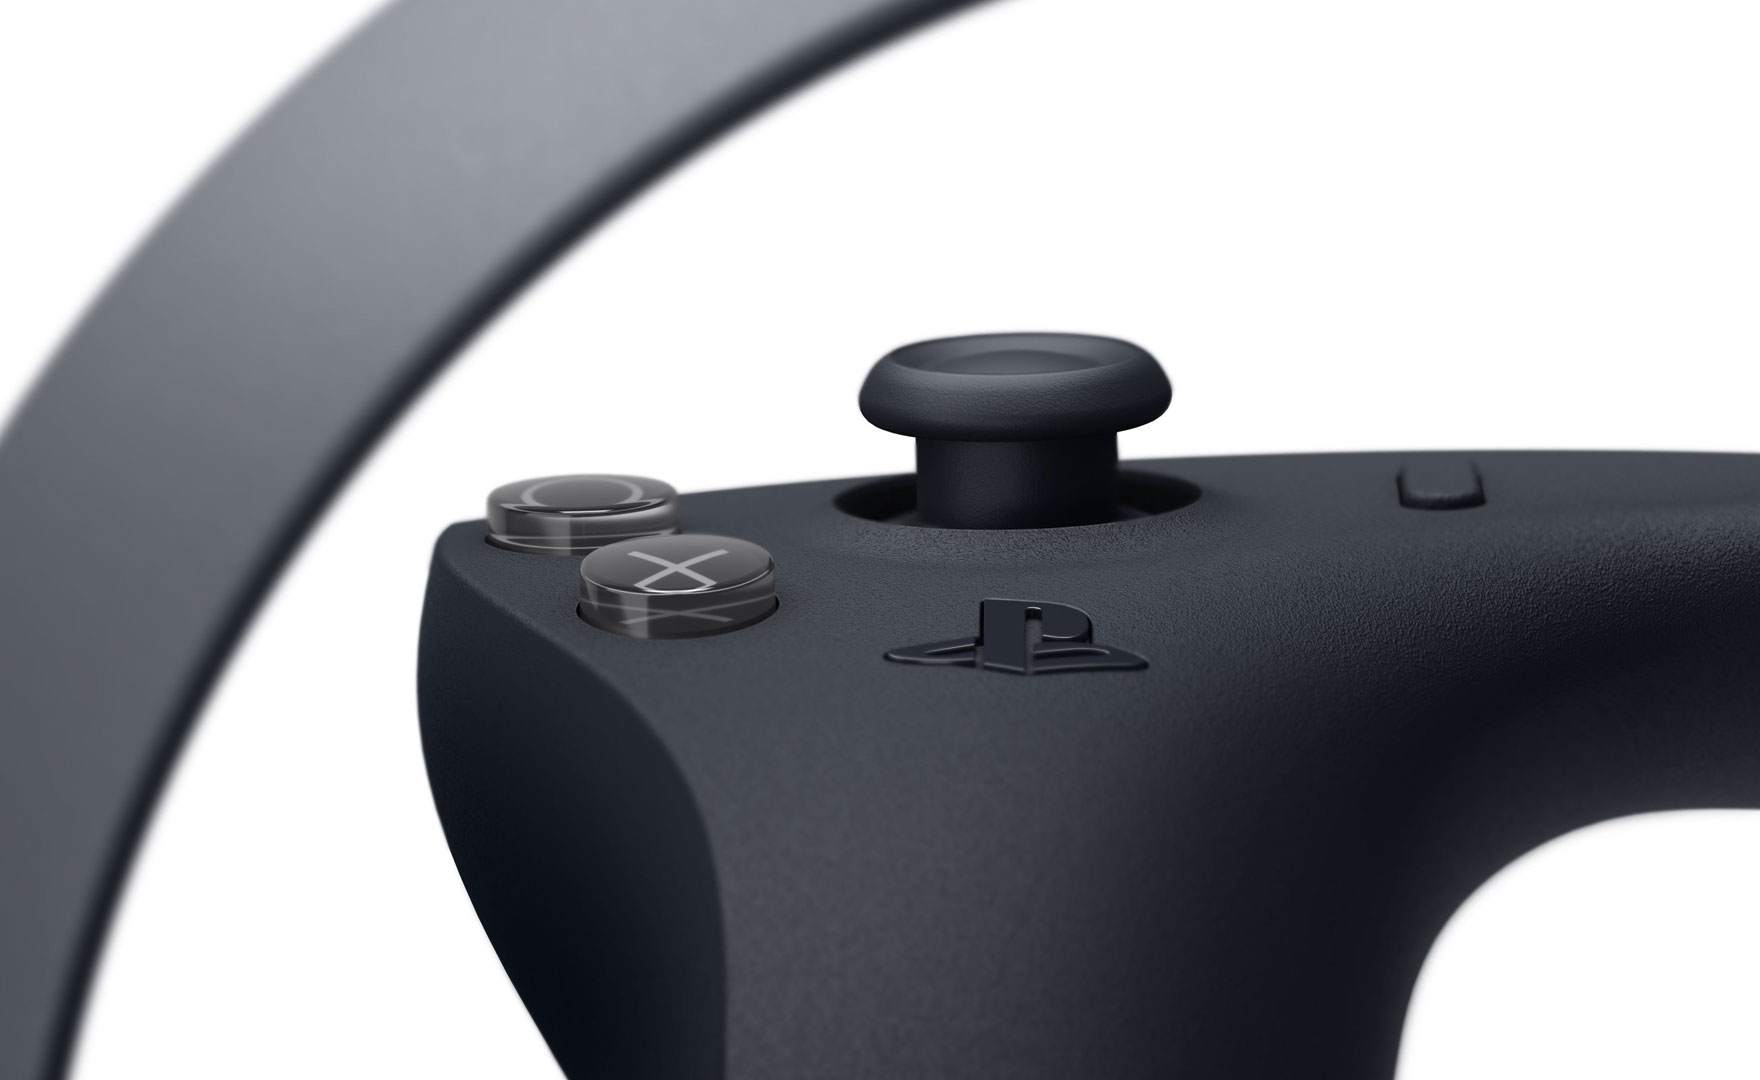 Sony annuncia a sorpresa i nuovi controller di PS5 VR!